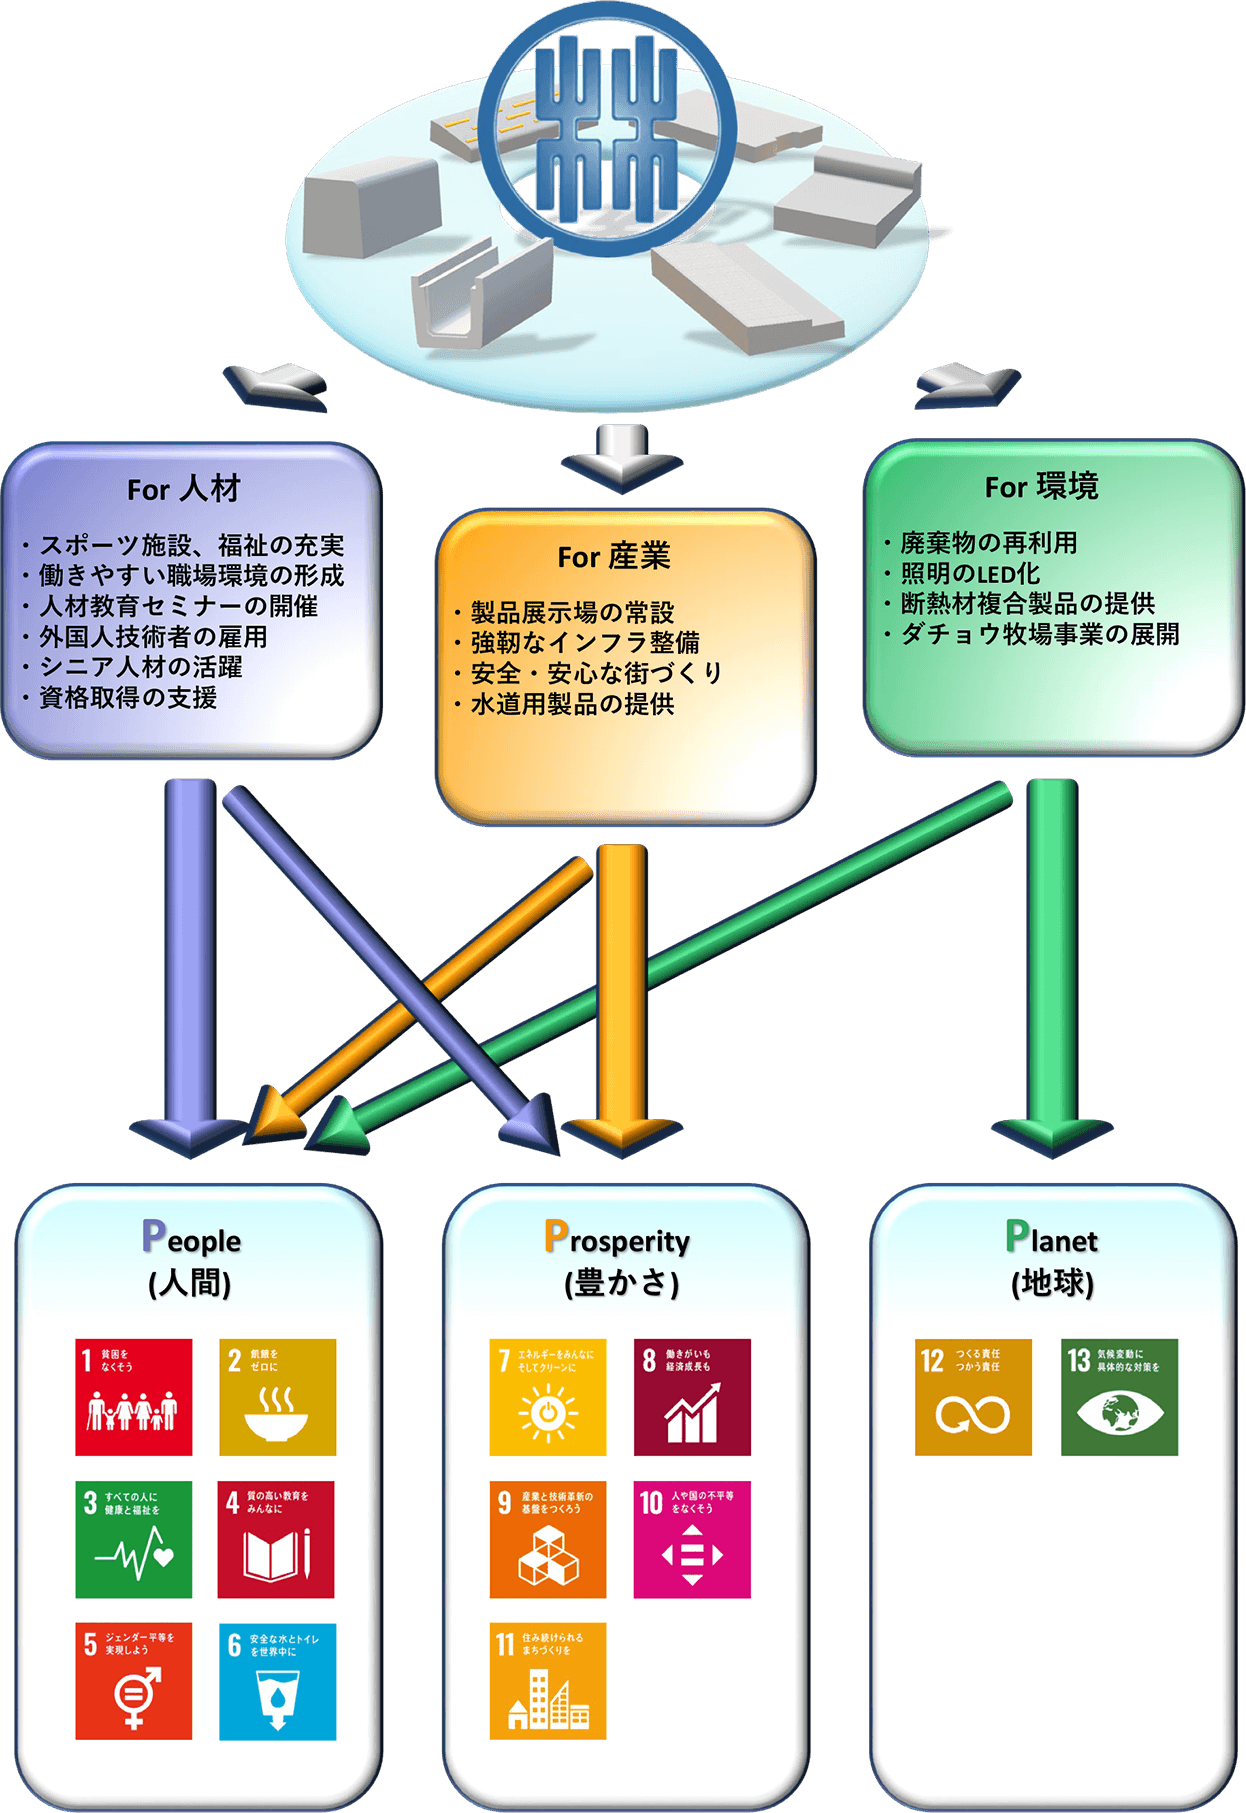 林屋コンクリート工業(株)におけるSDGsへの取り組み事例